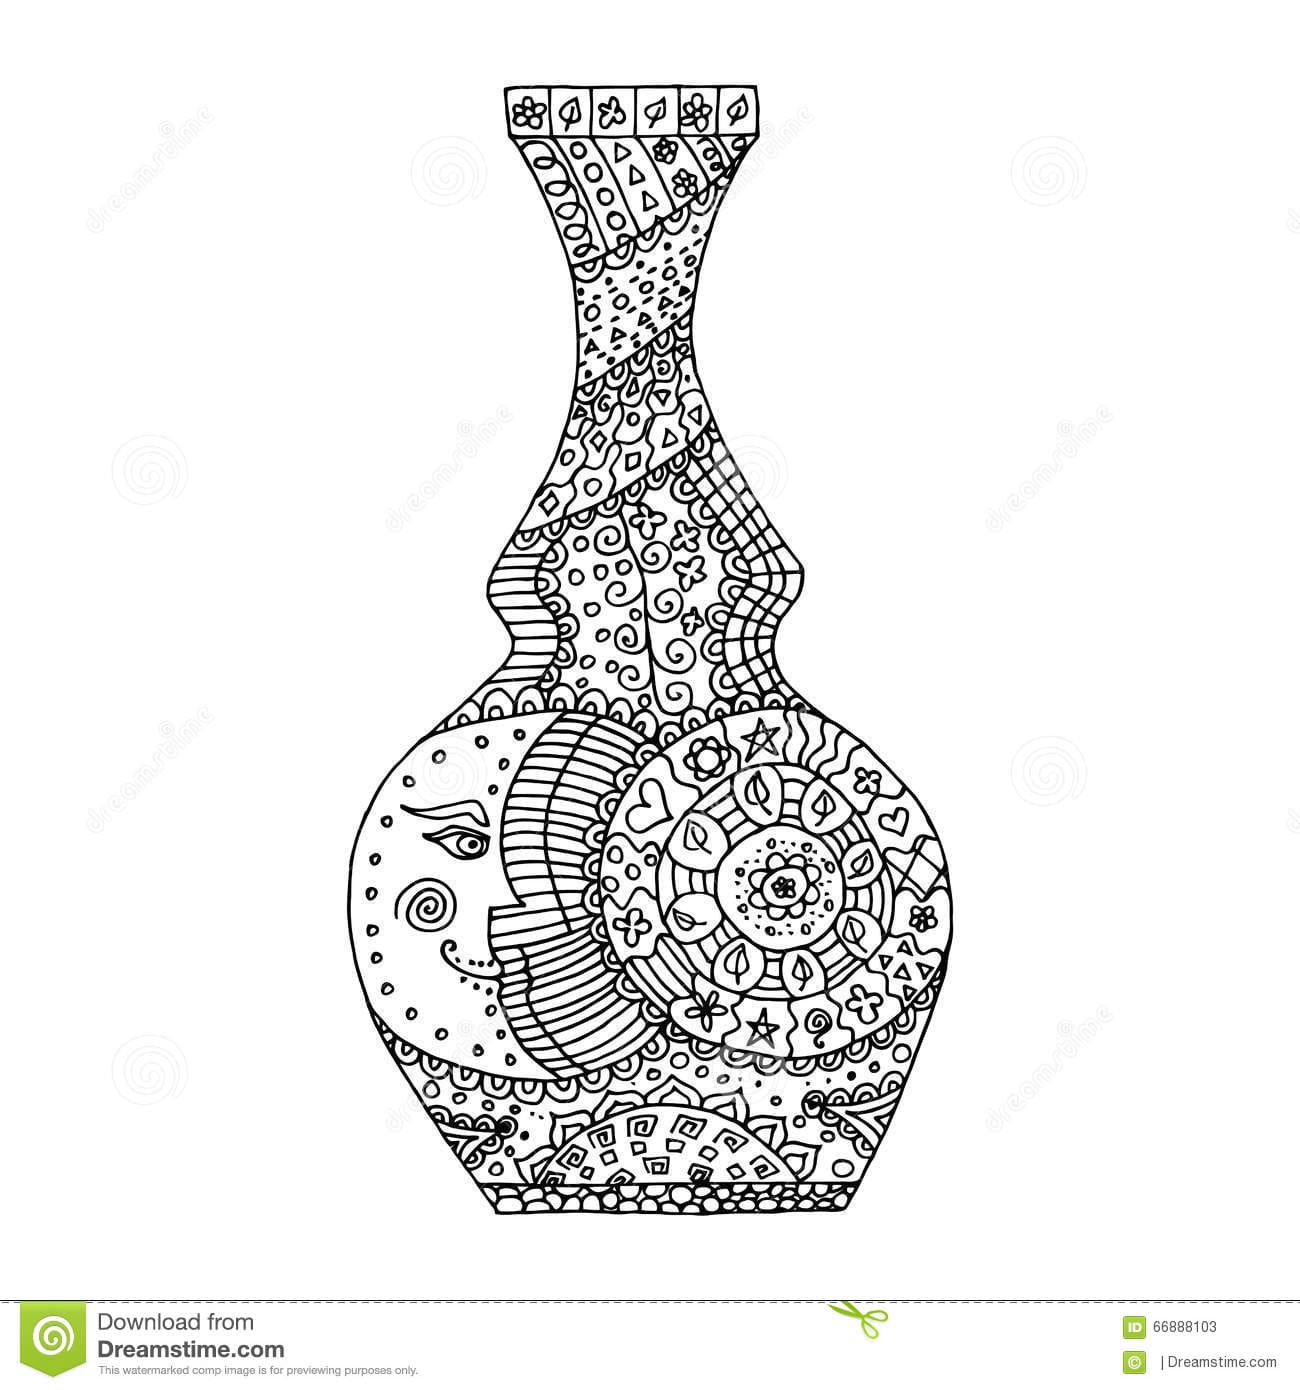 Vase Image For Kids